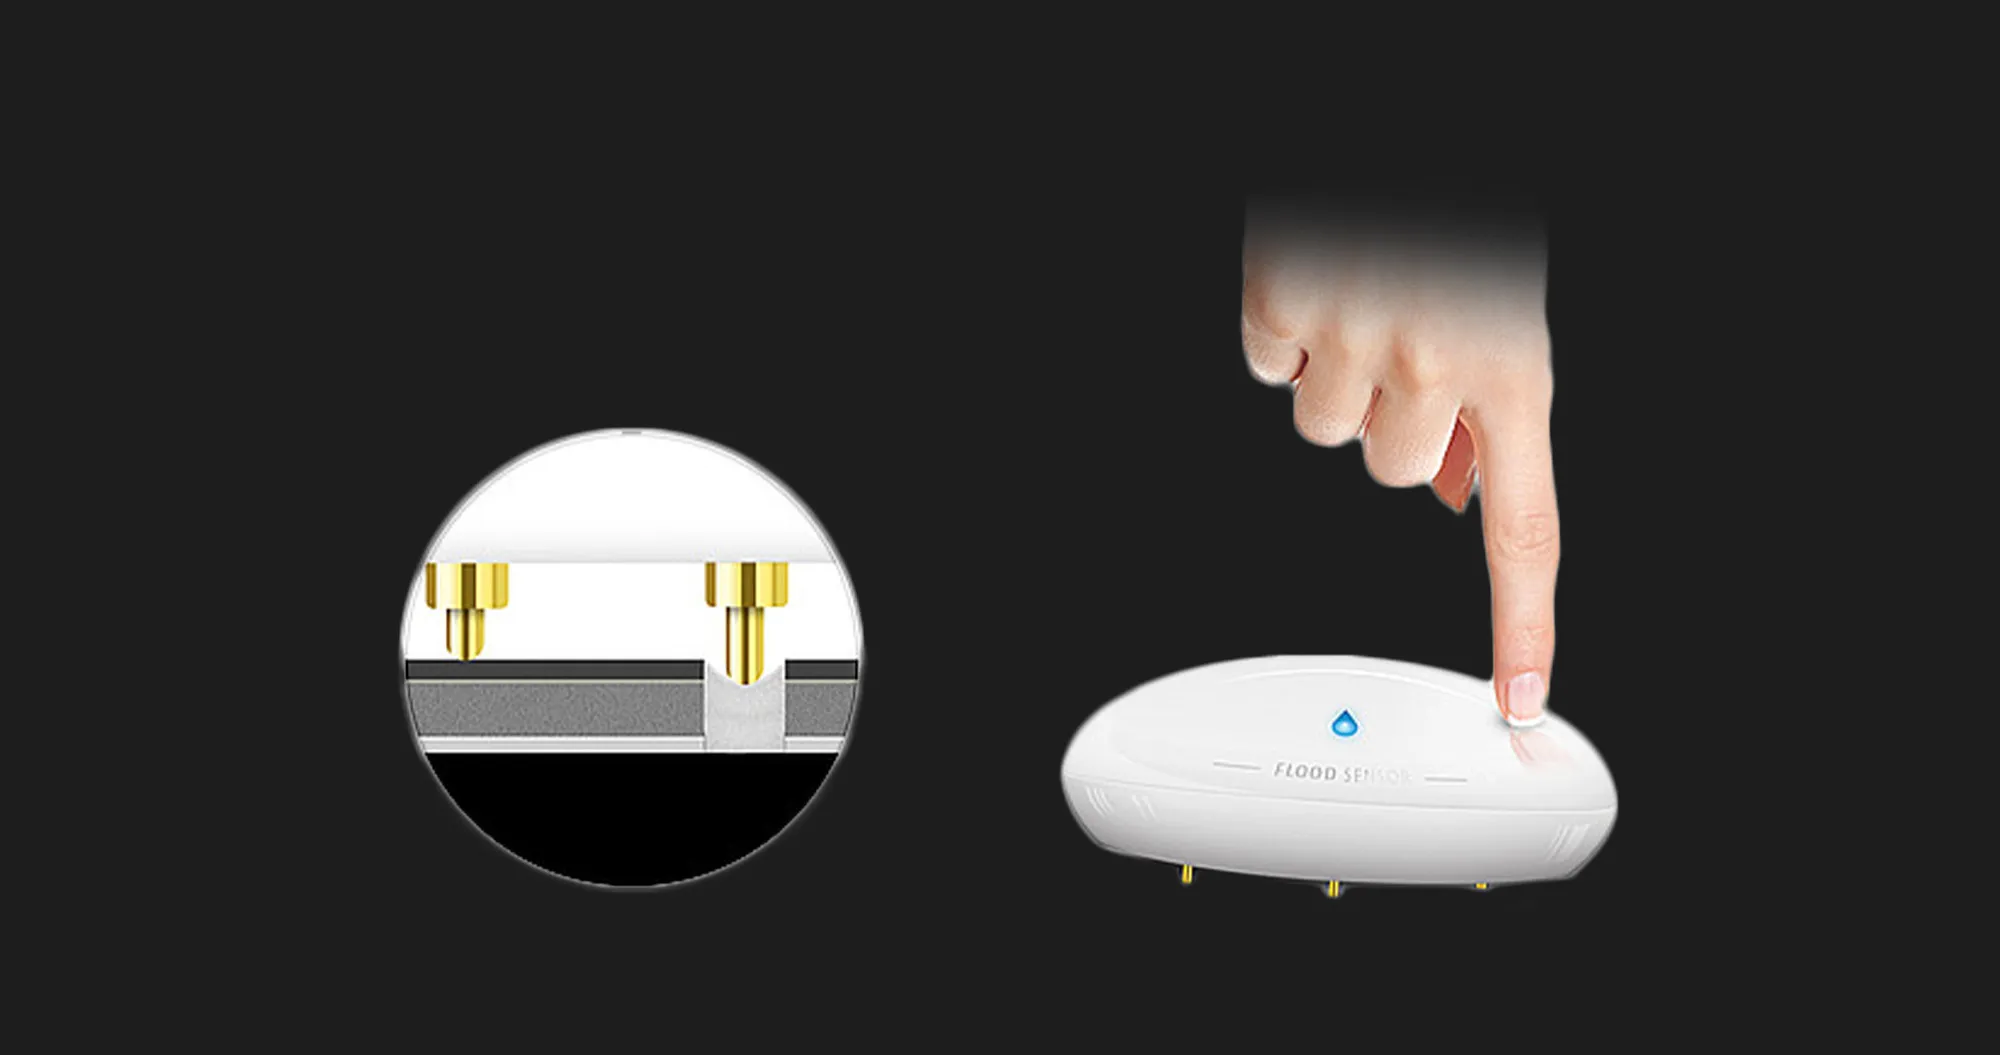 Датчик протікання FIBARO Flood Sensor для Apple HomeKit (White)